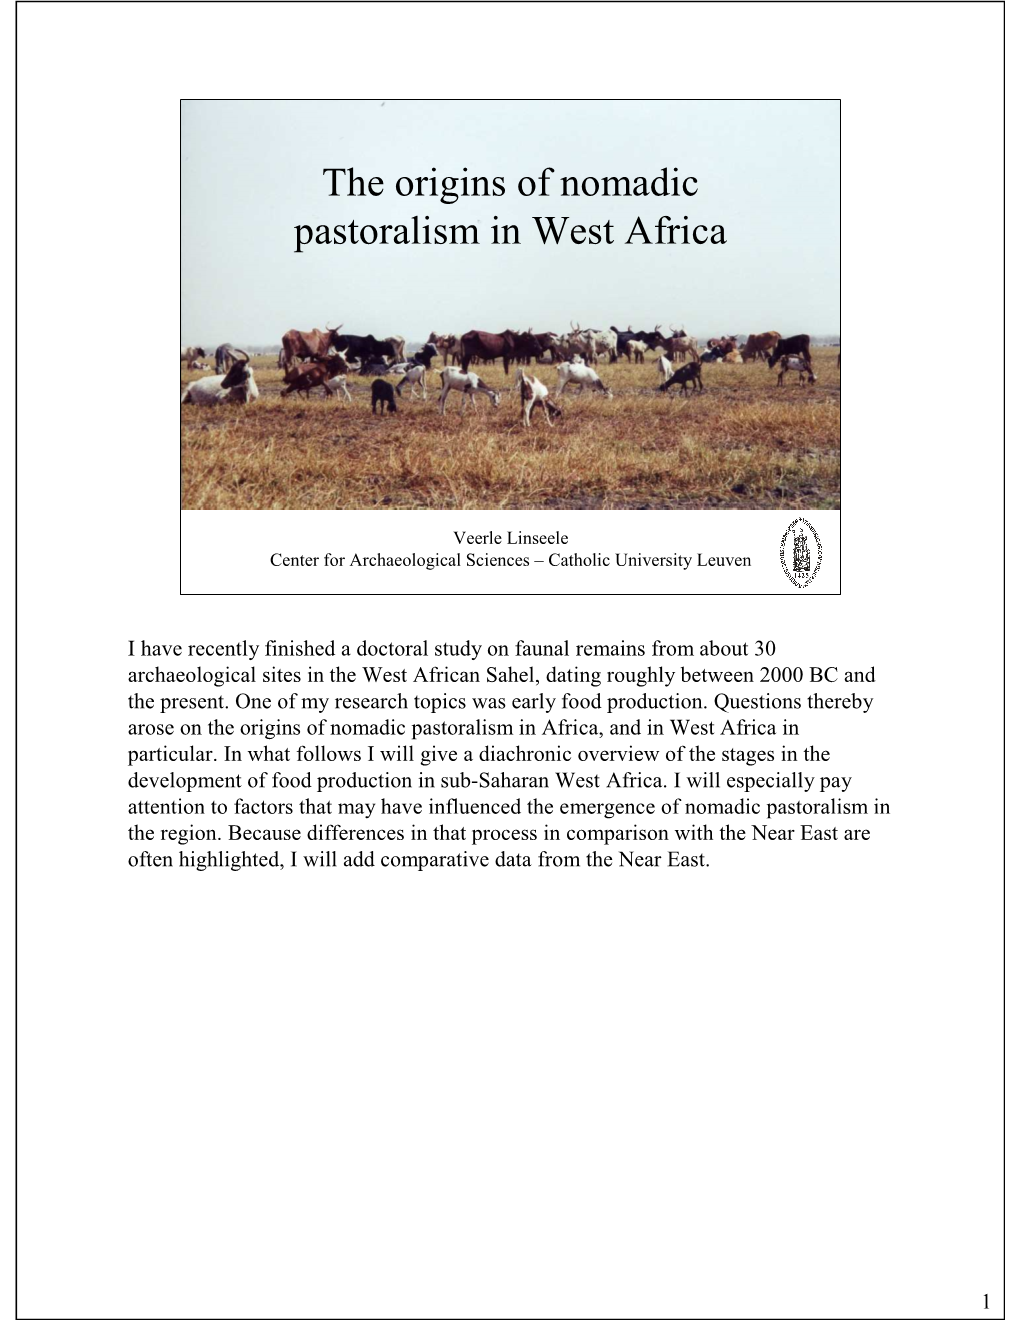 The Origins of Nomadic Pastoralism in West Africa